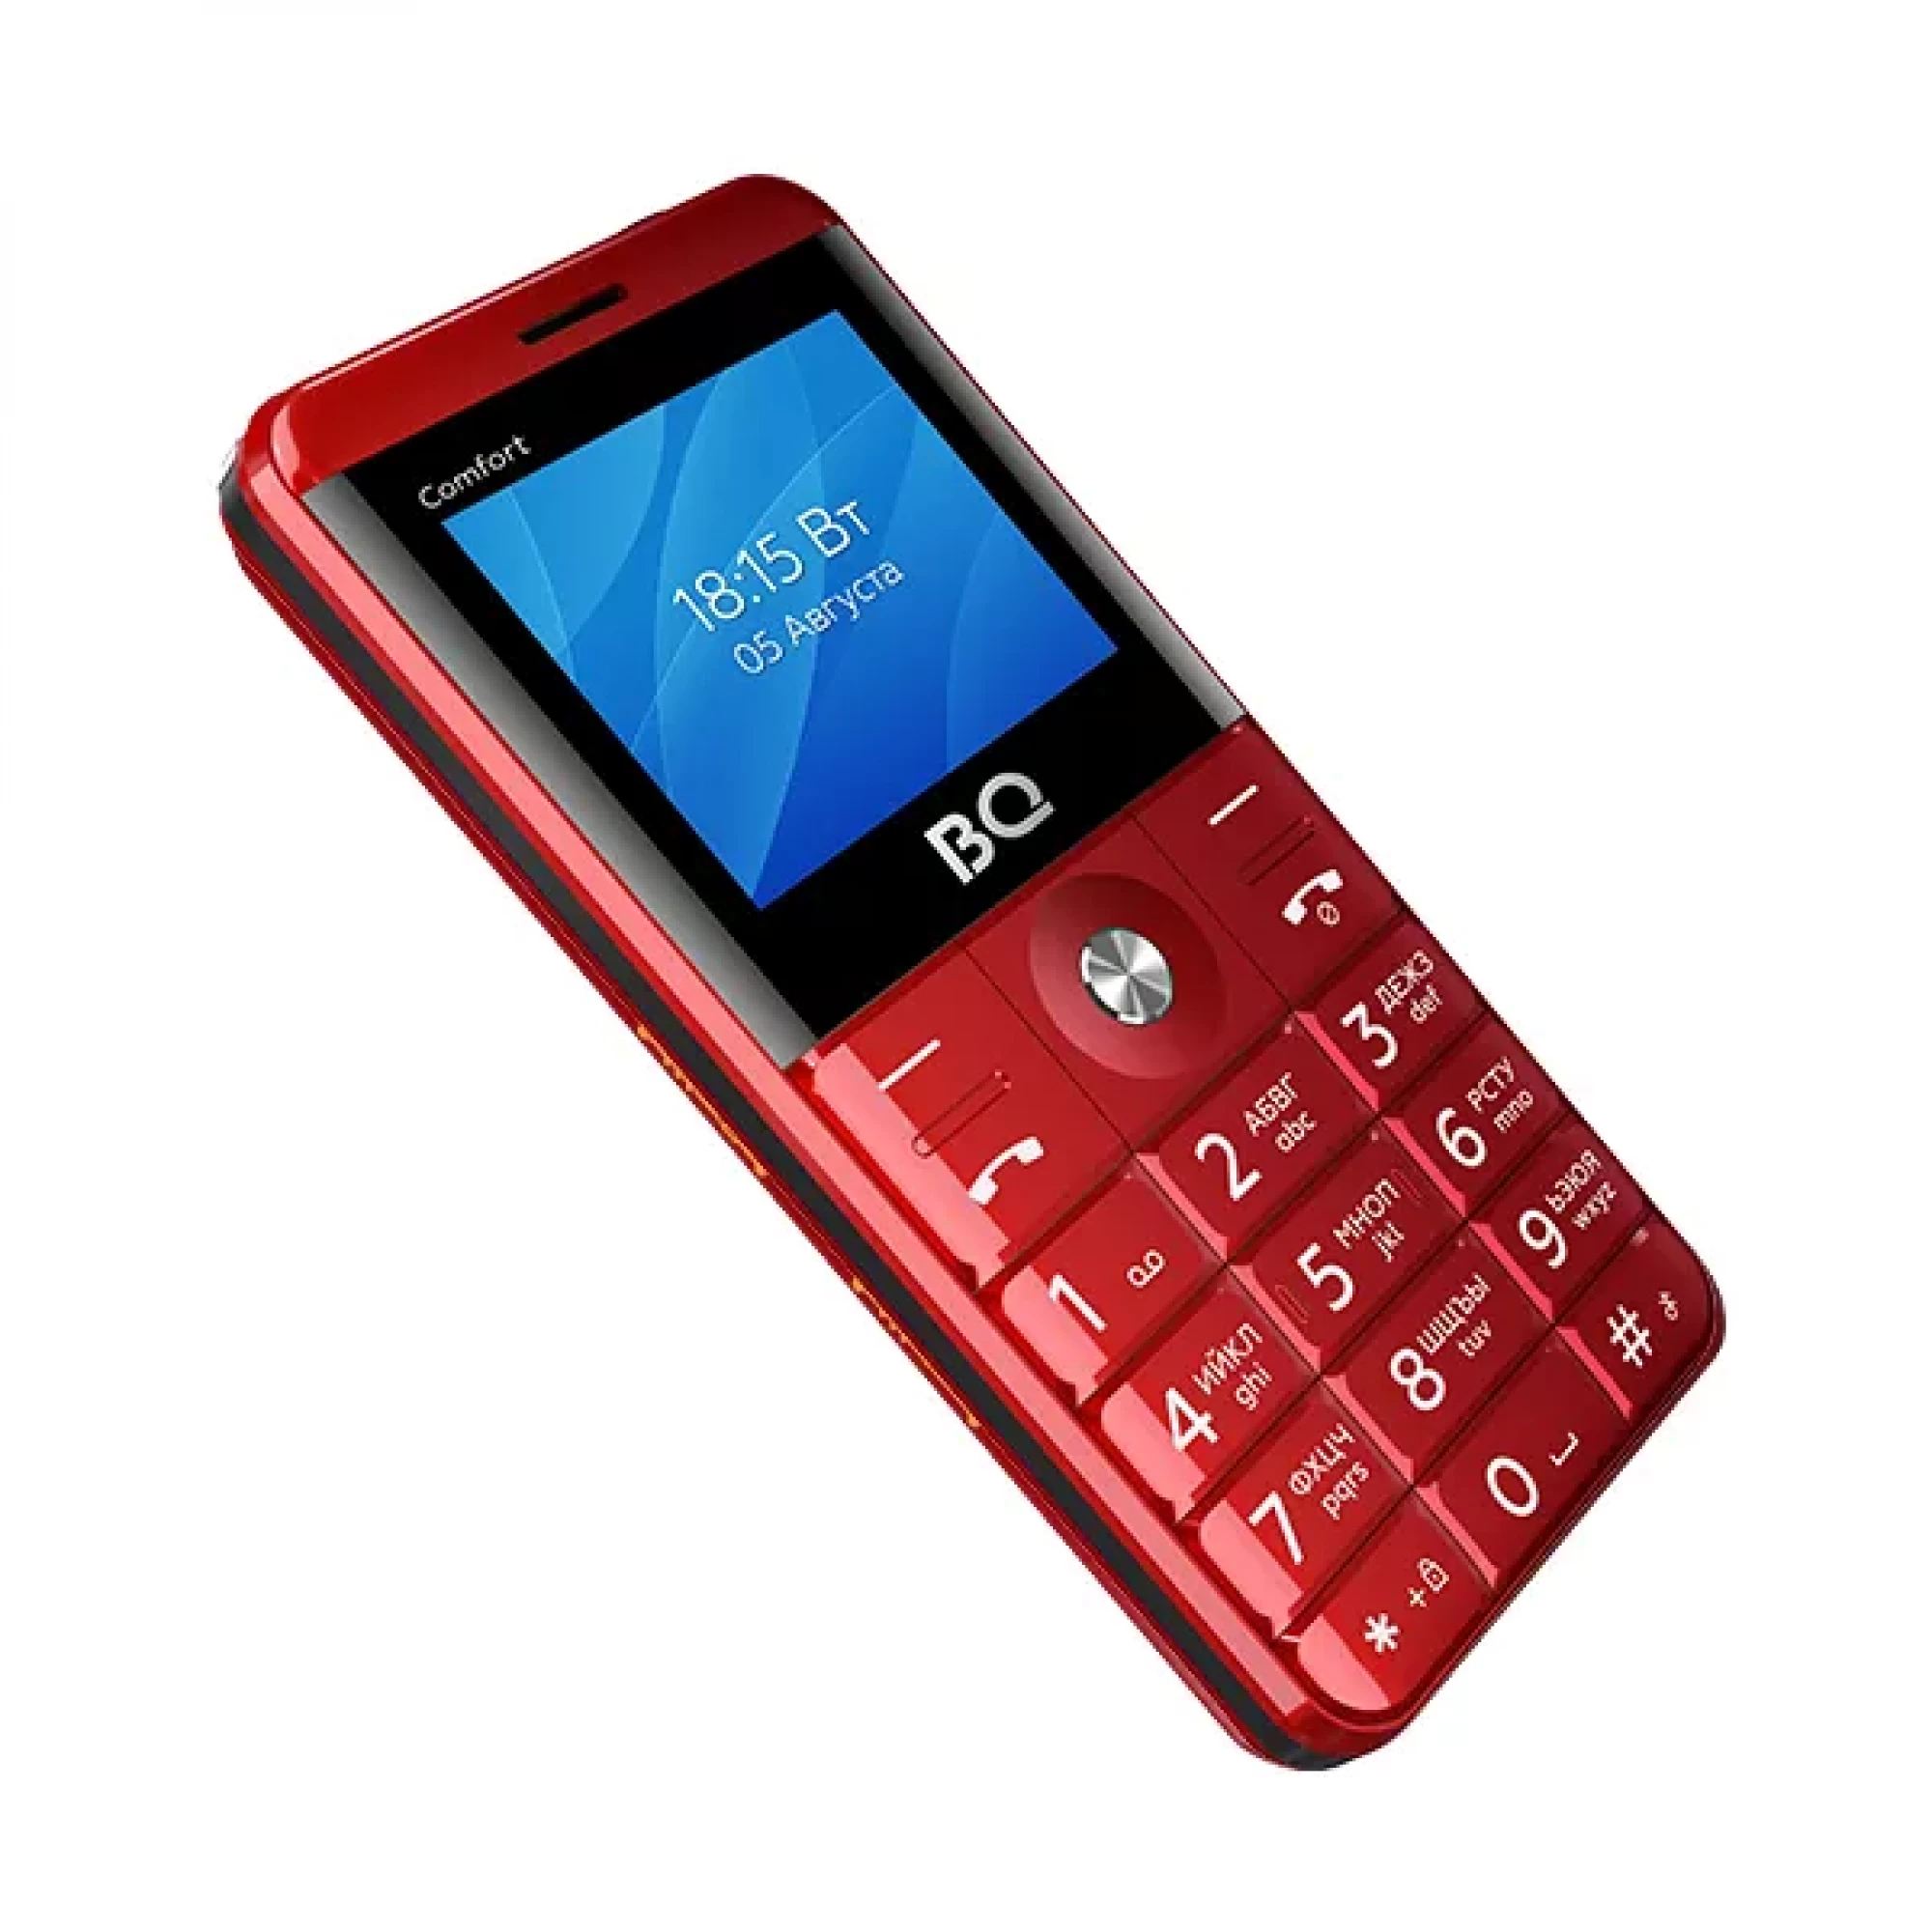 Мобильный телефон BQ BQ-2006 Comfort (красный)